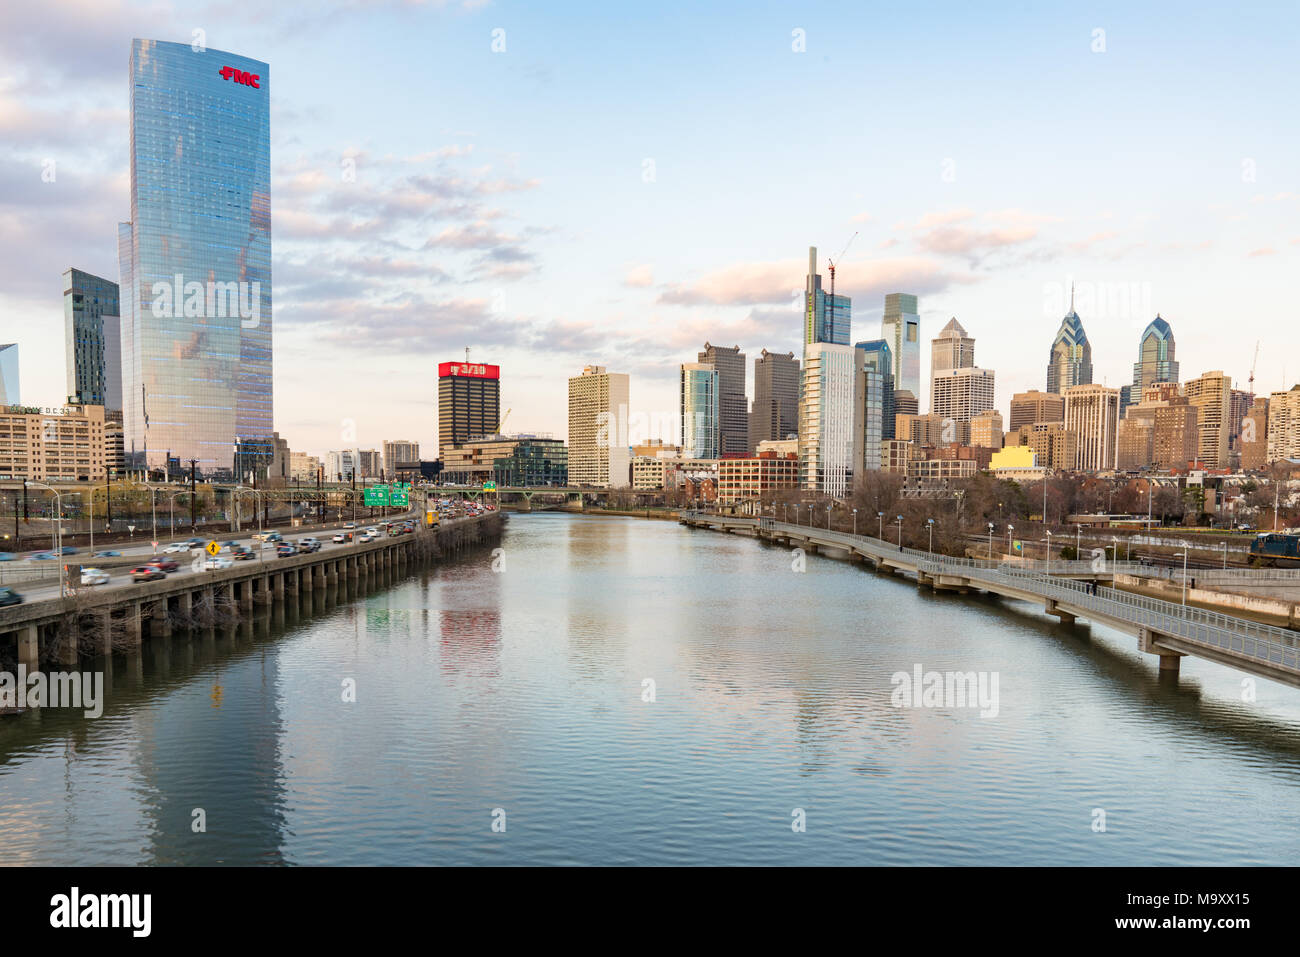 PHILADELPHIA, PA - 10. MÄRZ 2018: Philadelphia Skyline der Stadt entlang der Schuylkill River von der South Street Bridge Stockfoto